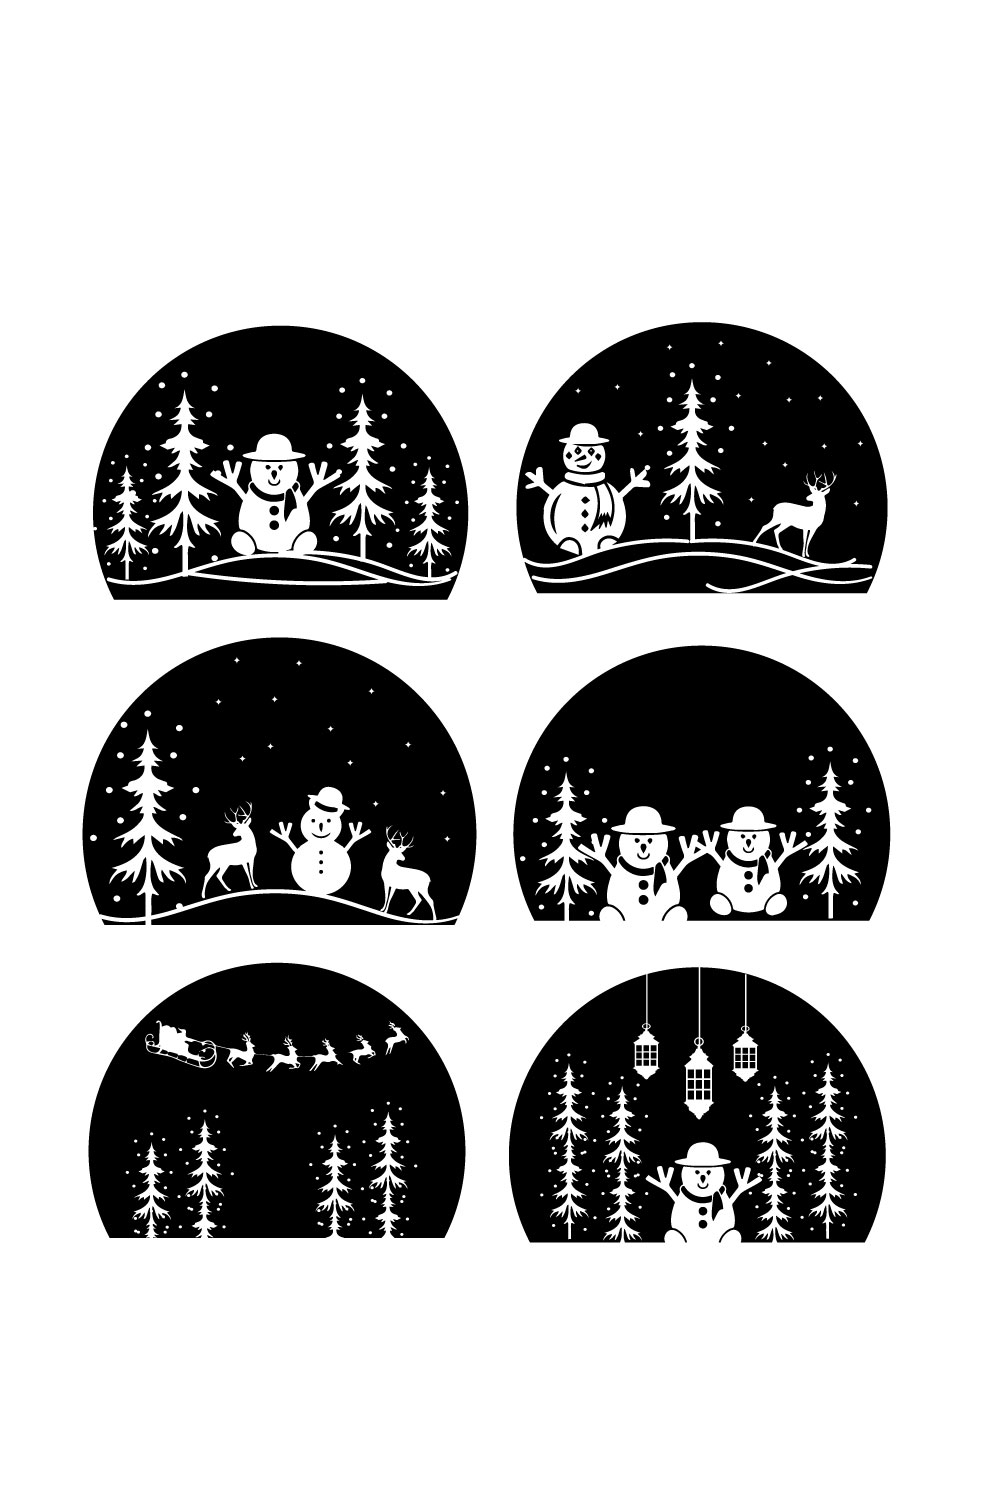 Christmas Snowman SVG Bundle Pinterest image.